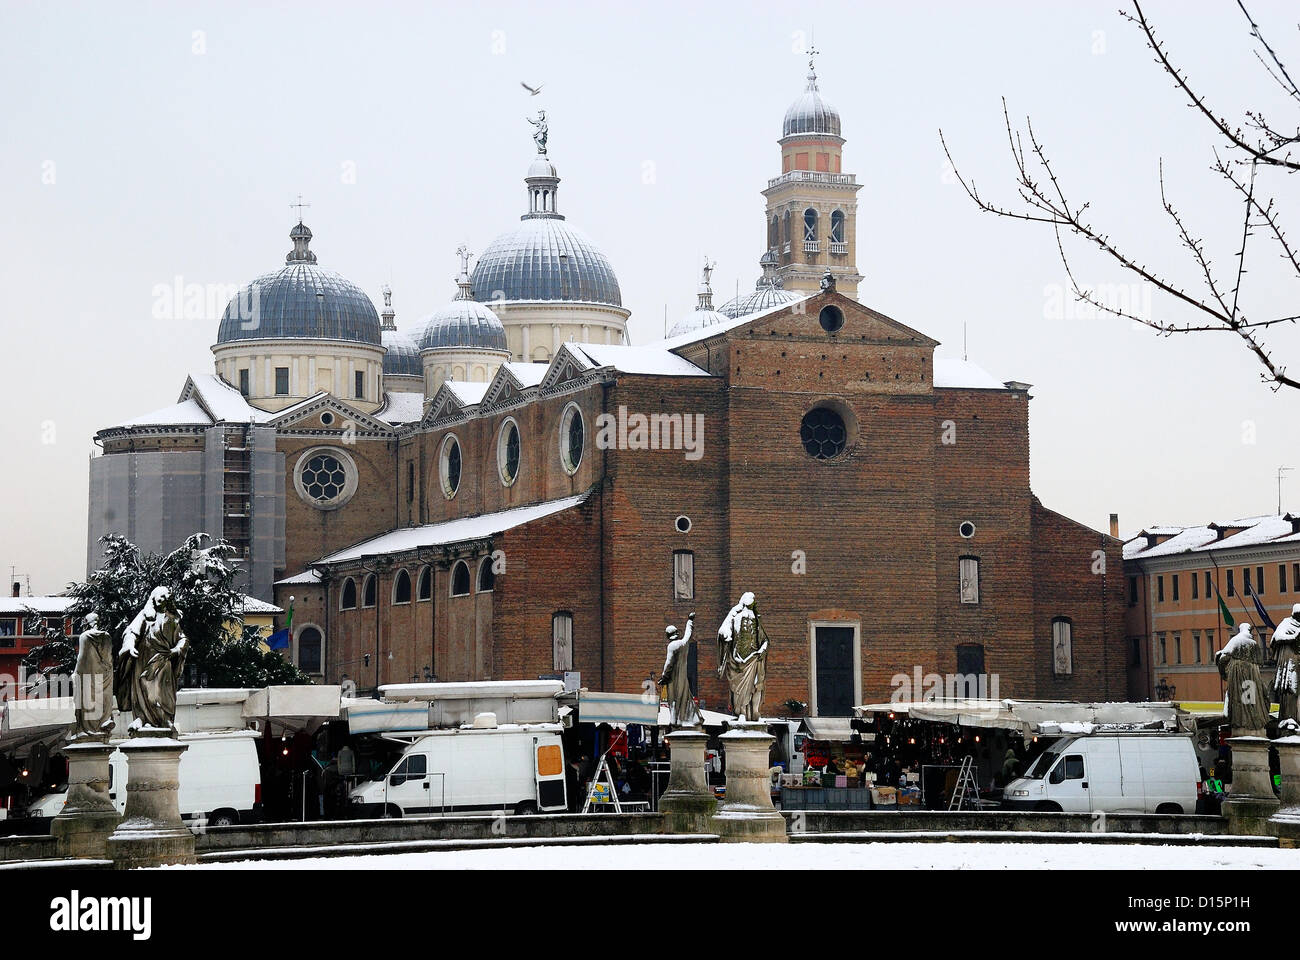 Padova, Italia, dicembre 8th, 2012. Oggi la prima neve dell anno ha imbiancato la città.La chiesa di Santa Giustina. Foto Stock